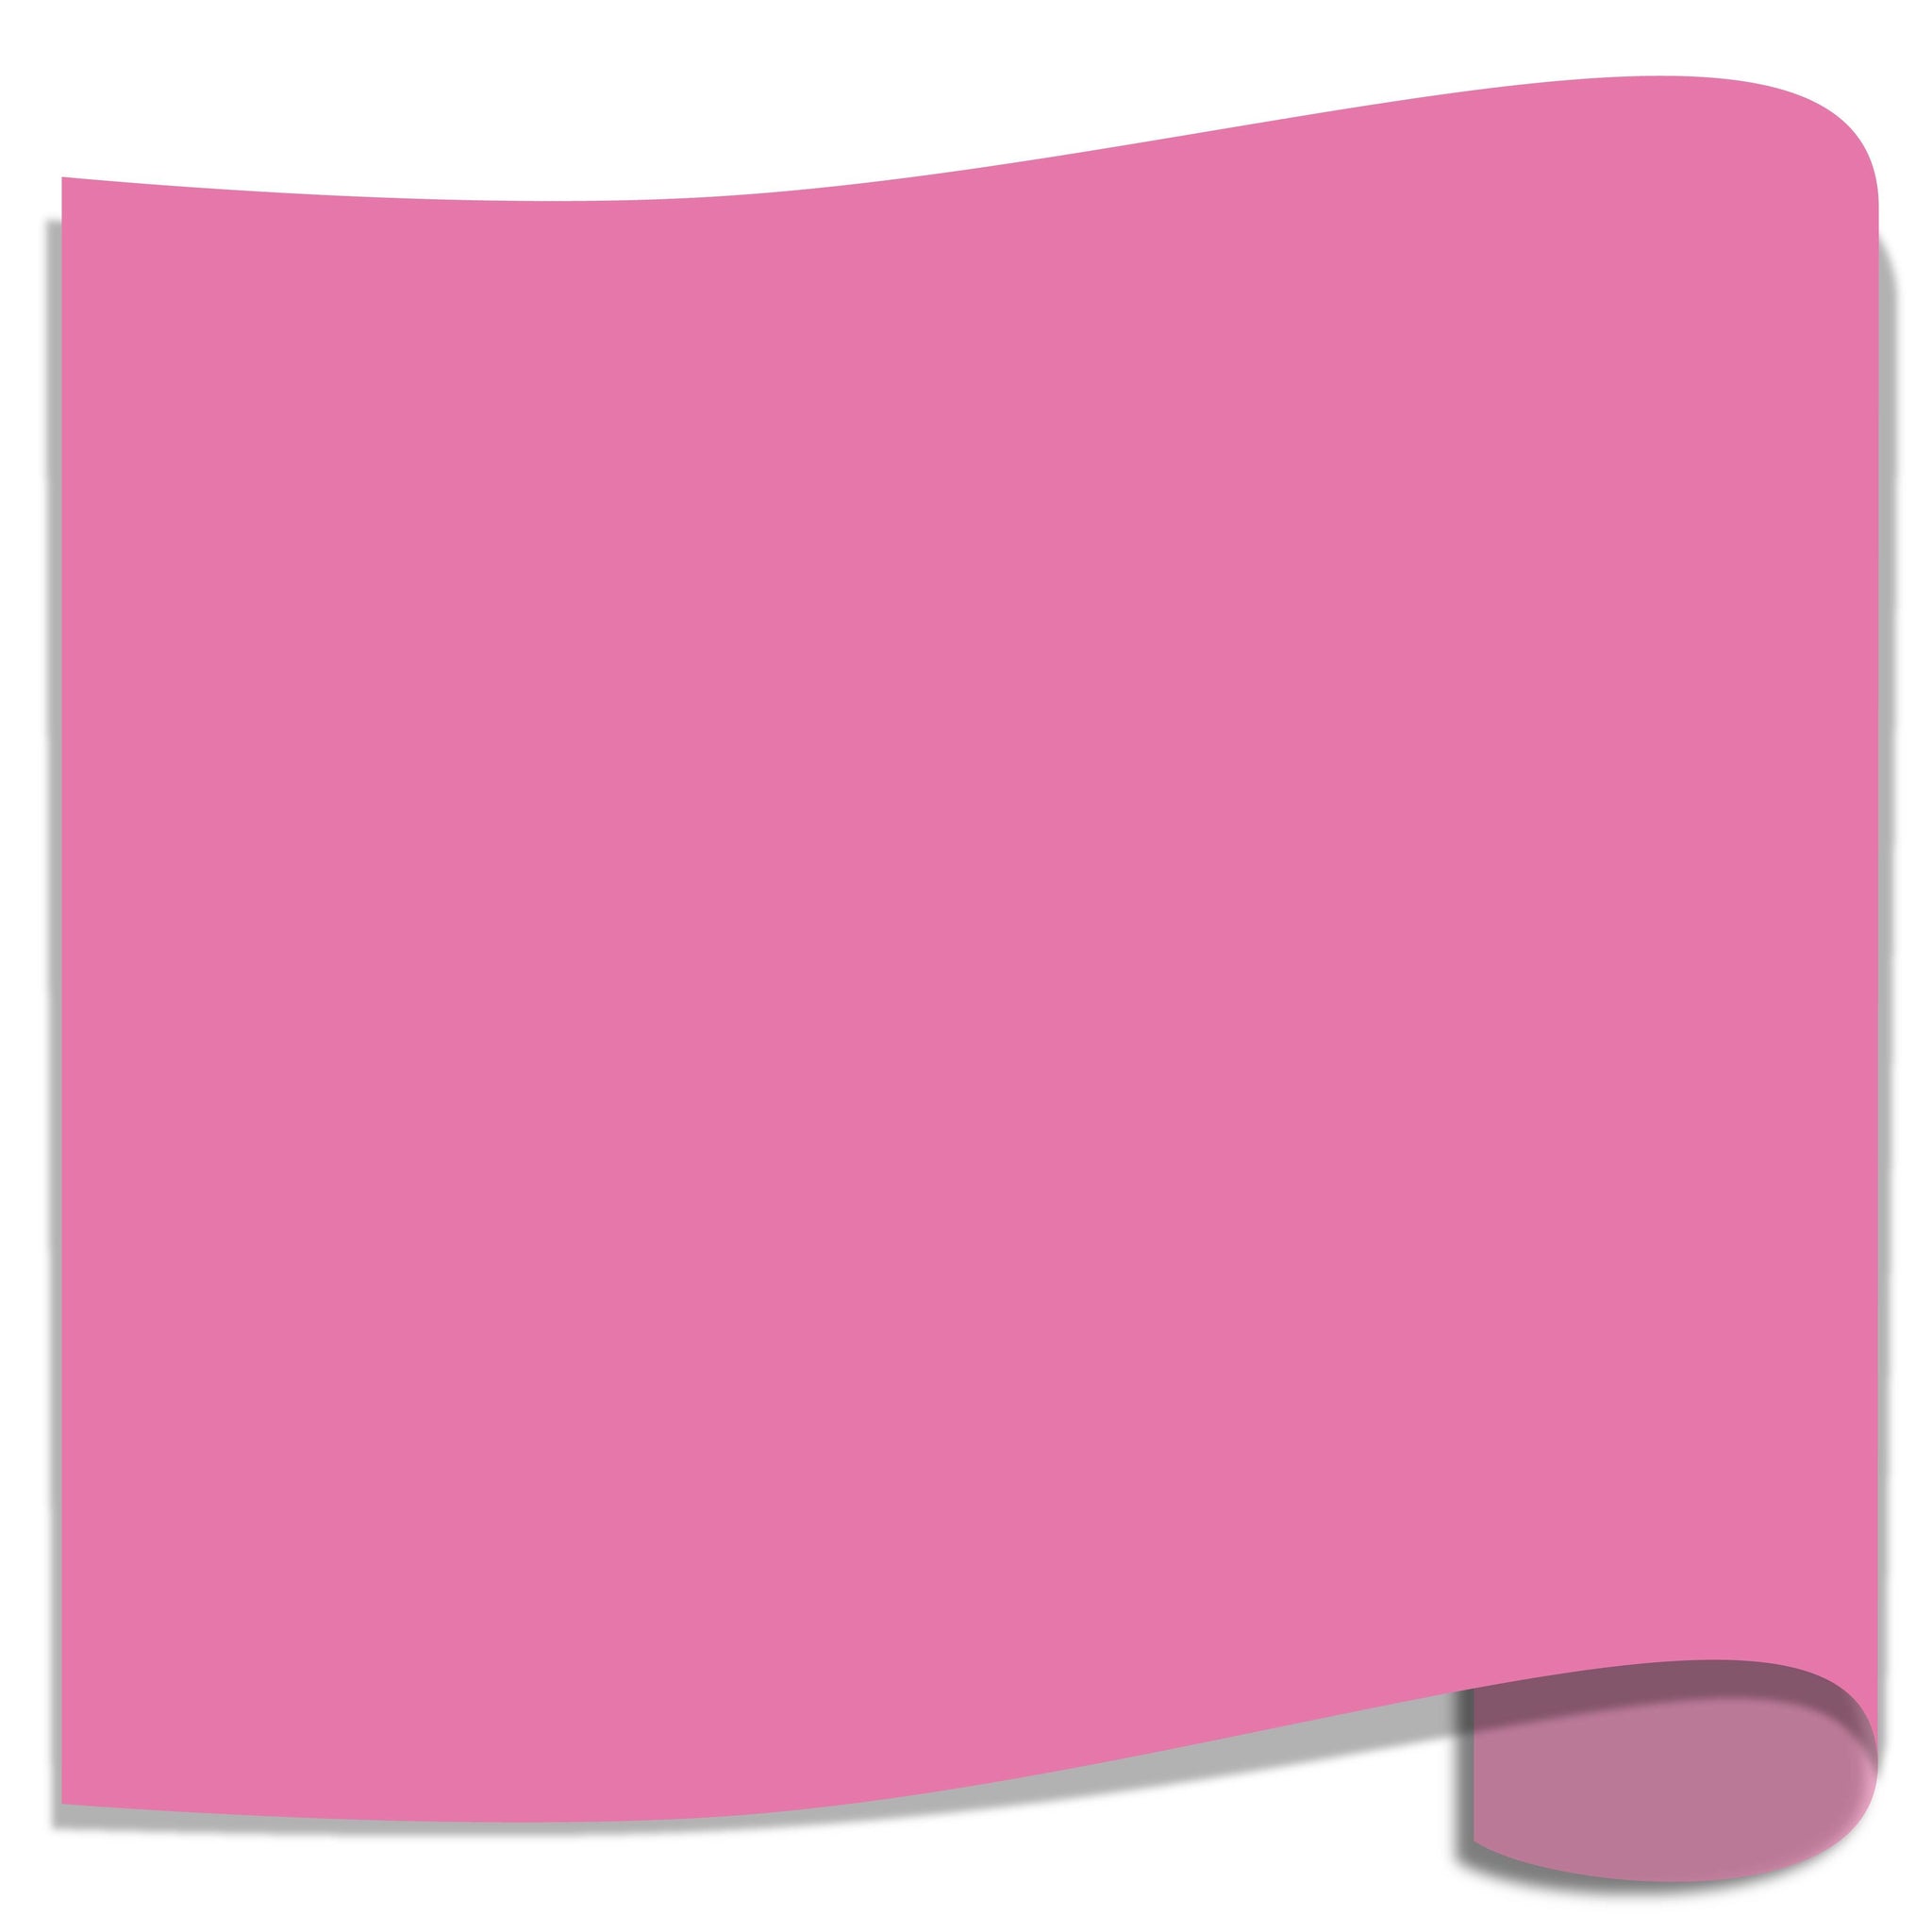 Siser Easyweed - Pink - 12 x 15